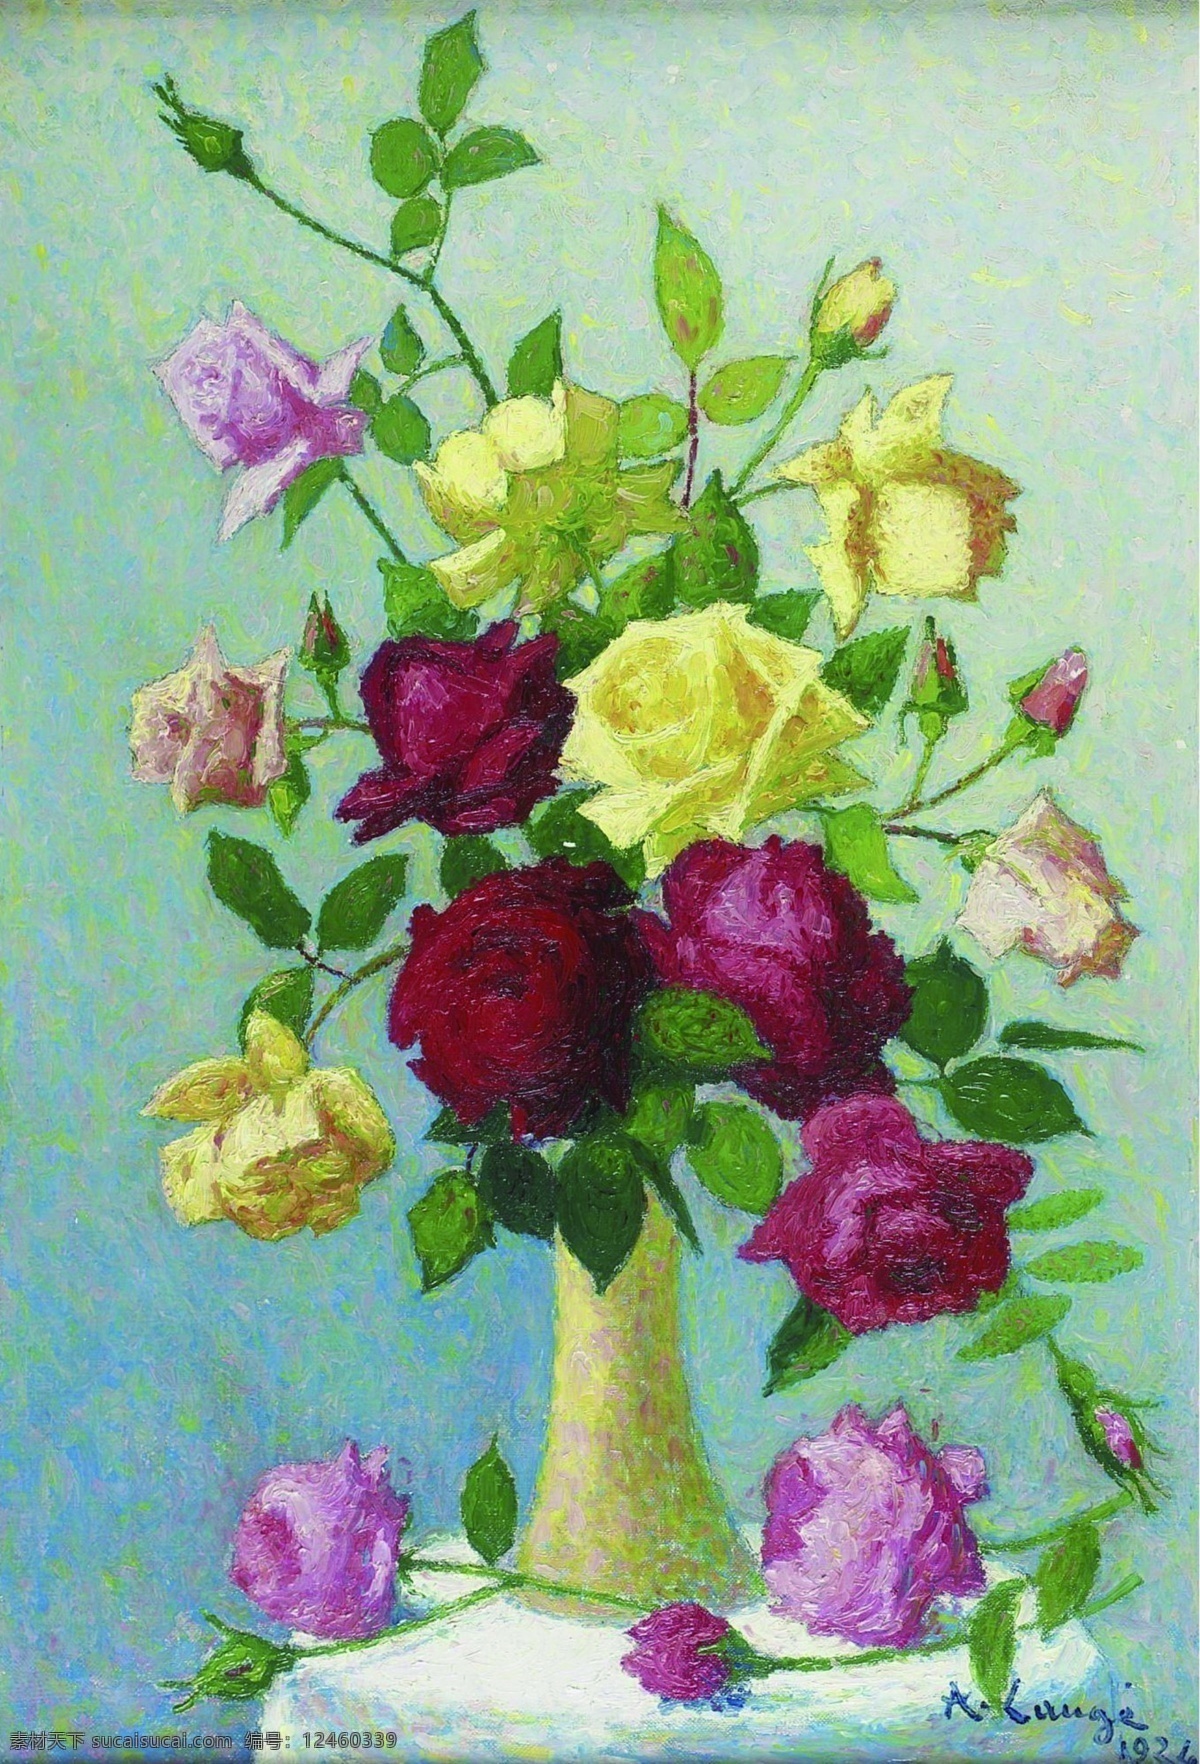 1924 花卉 水果 蔬菜 器皿 静物 印象 画派 写实主义 油画 装饰画 roses of vase lauge achille 荷花 玫瑰 百合 鲜花 实物 装饰素材